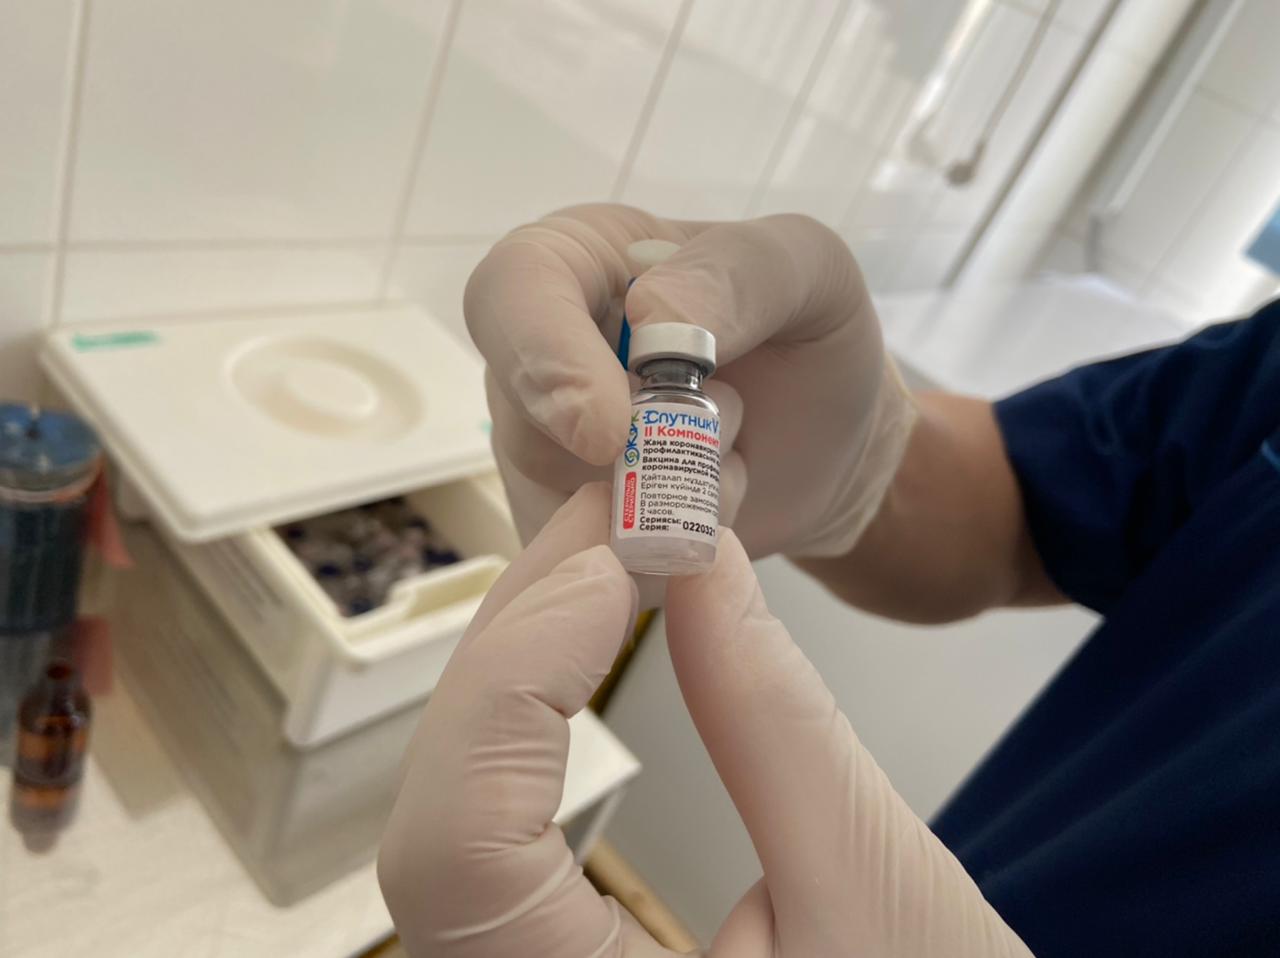 Аймақта халықты коронавирустық инфекцияға қарсы вакцинациялау жұмыстары қарқынды жүргізілуде